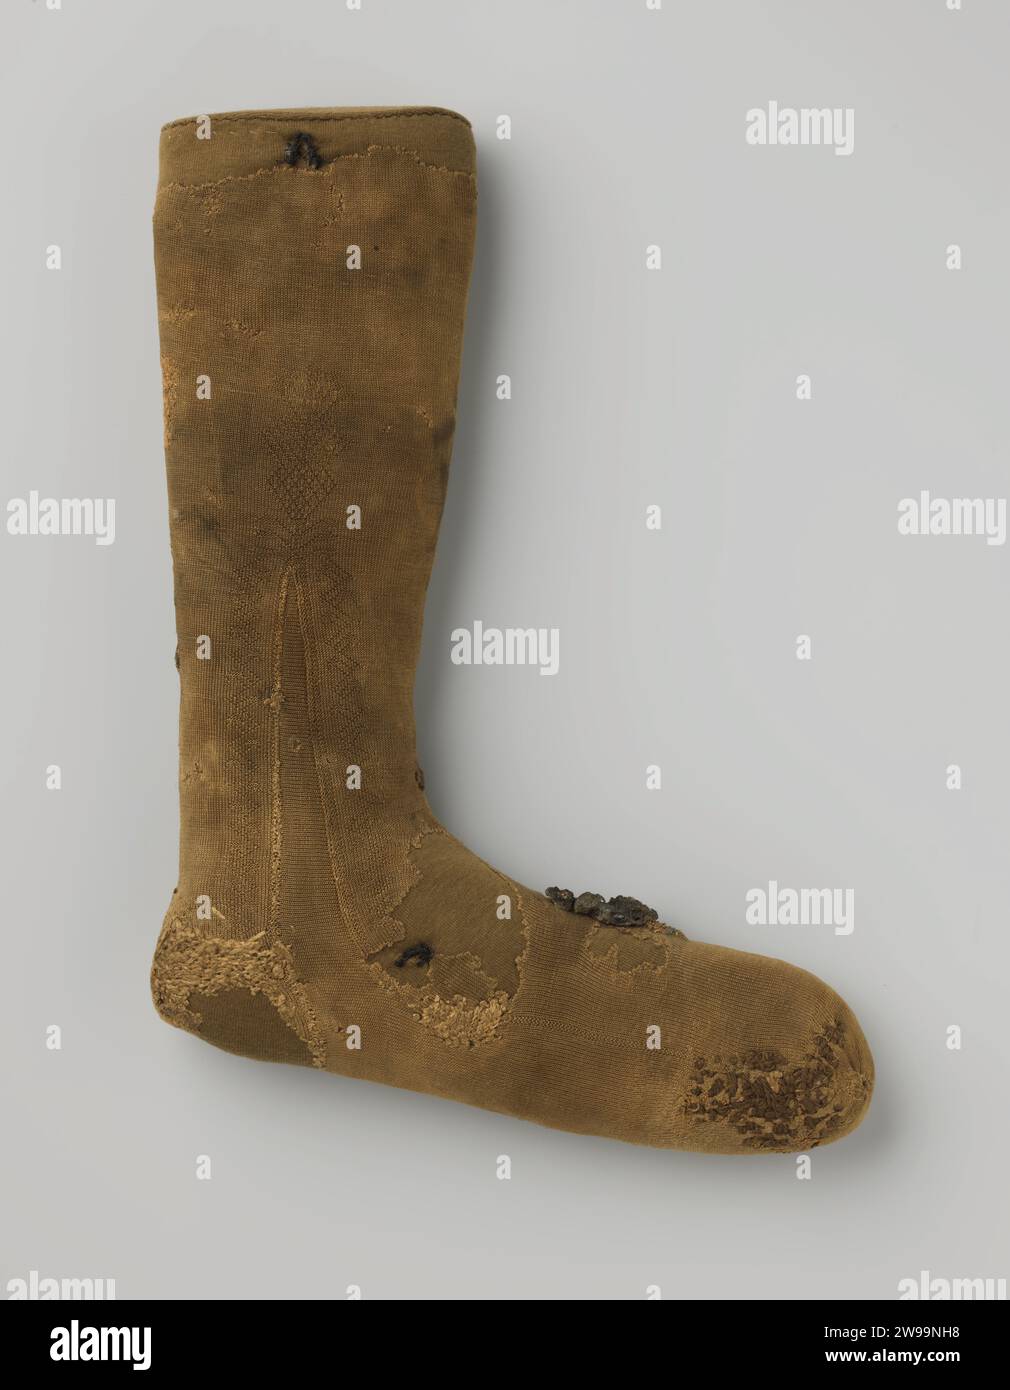 Calza di seta da uomo dal relitto dell'olandese East Indiaman 't Vliegend Hart, 1730 - 1735 calza di seta quasi completa su cui è ricamato un motivo. Con diverse fermate. ricamo in seta Foto Stock